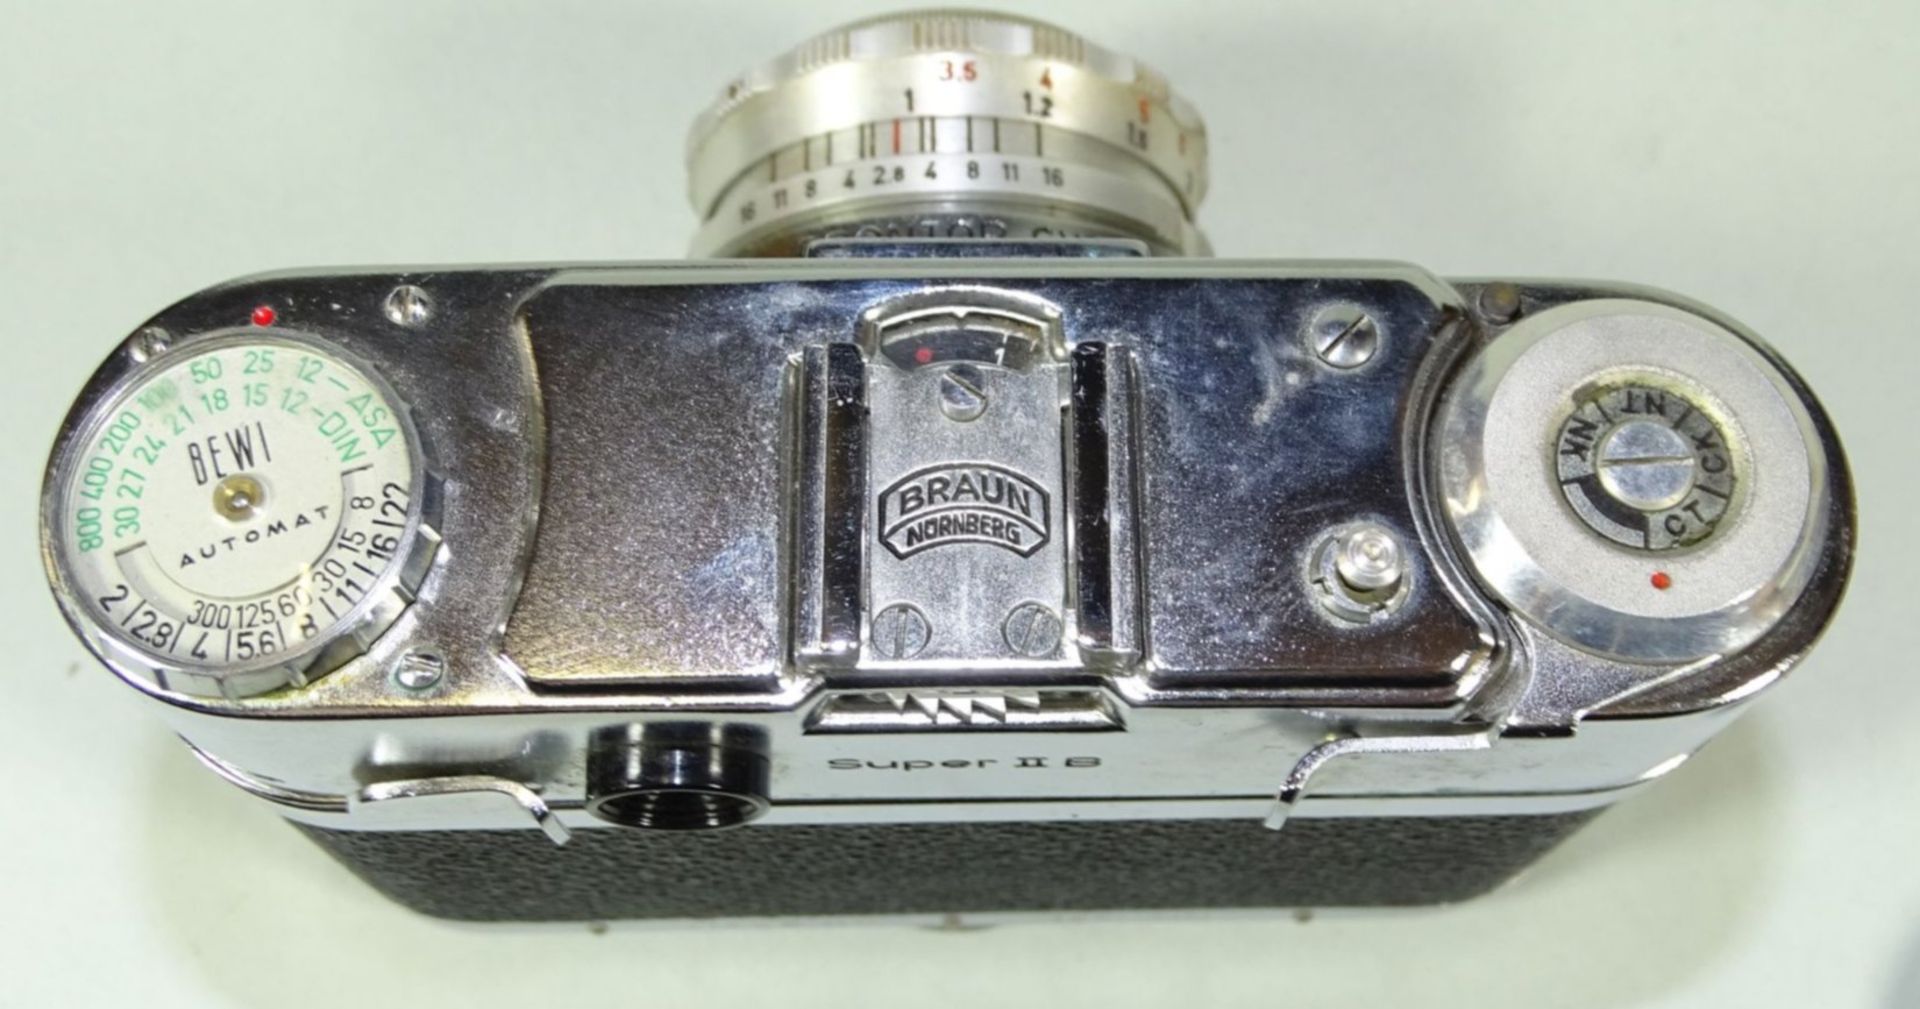 Braun Paxette Super II B Kamera mit Steinheil Cassarit 1:2,8 f=45mm Objektiv, in Ledertasche, gut - Bild 6 aus 6